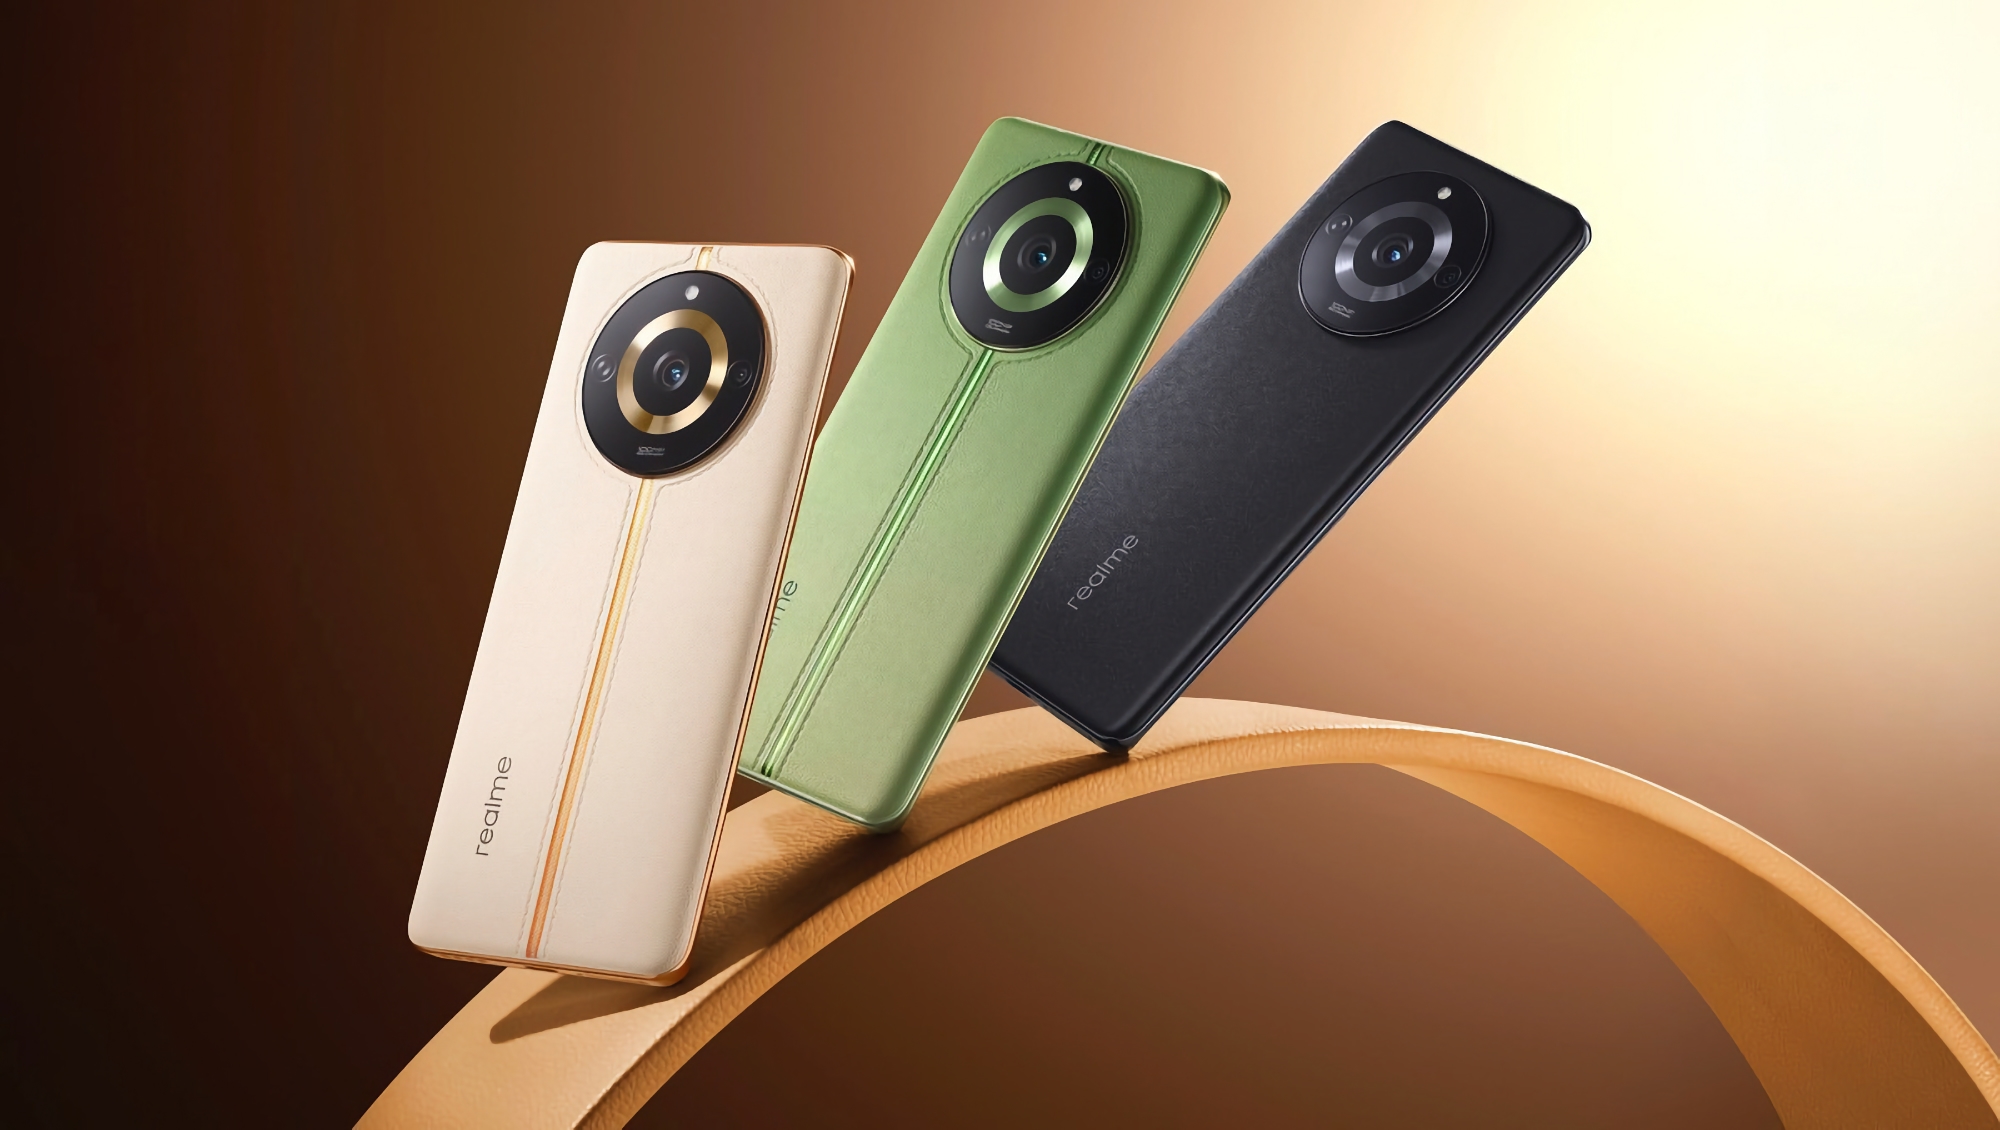 Le Realme 11 Pro fait ses débuts sur le marché mondial : écran OLED 120Hz, puce Dimensity 7050 et appareil photo 100 MP pour 290 dollars